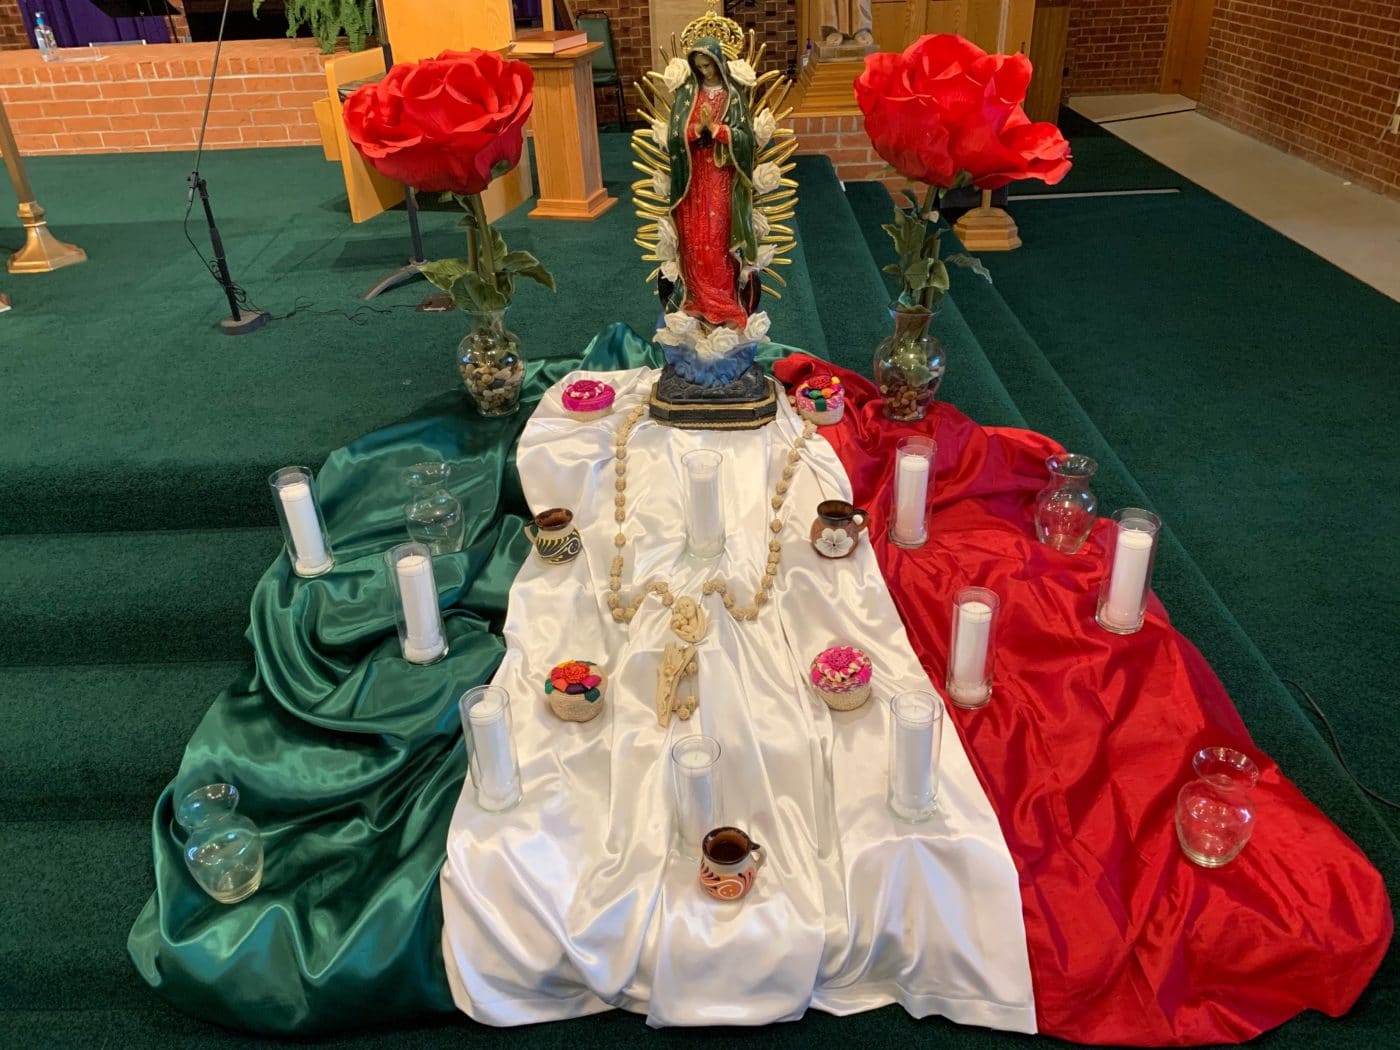 nuestra Señora la Virgen de Guadalupe